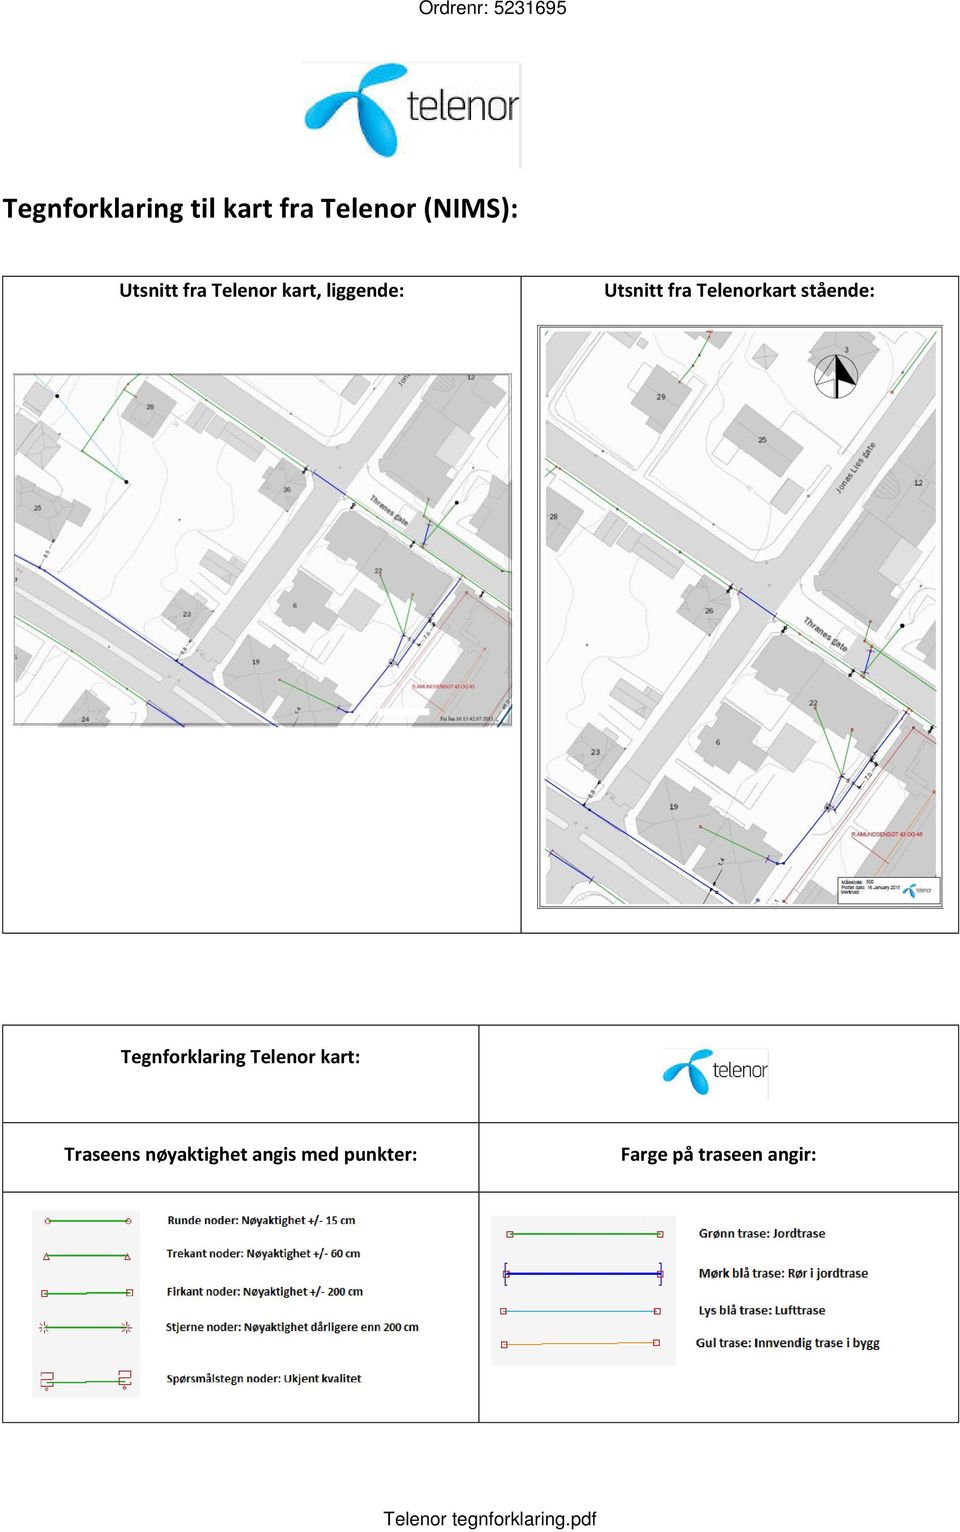 Tegnforklaring Telenor kart: Traseens nøyaktighet angis